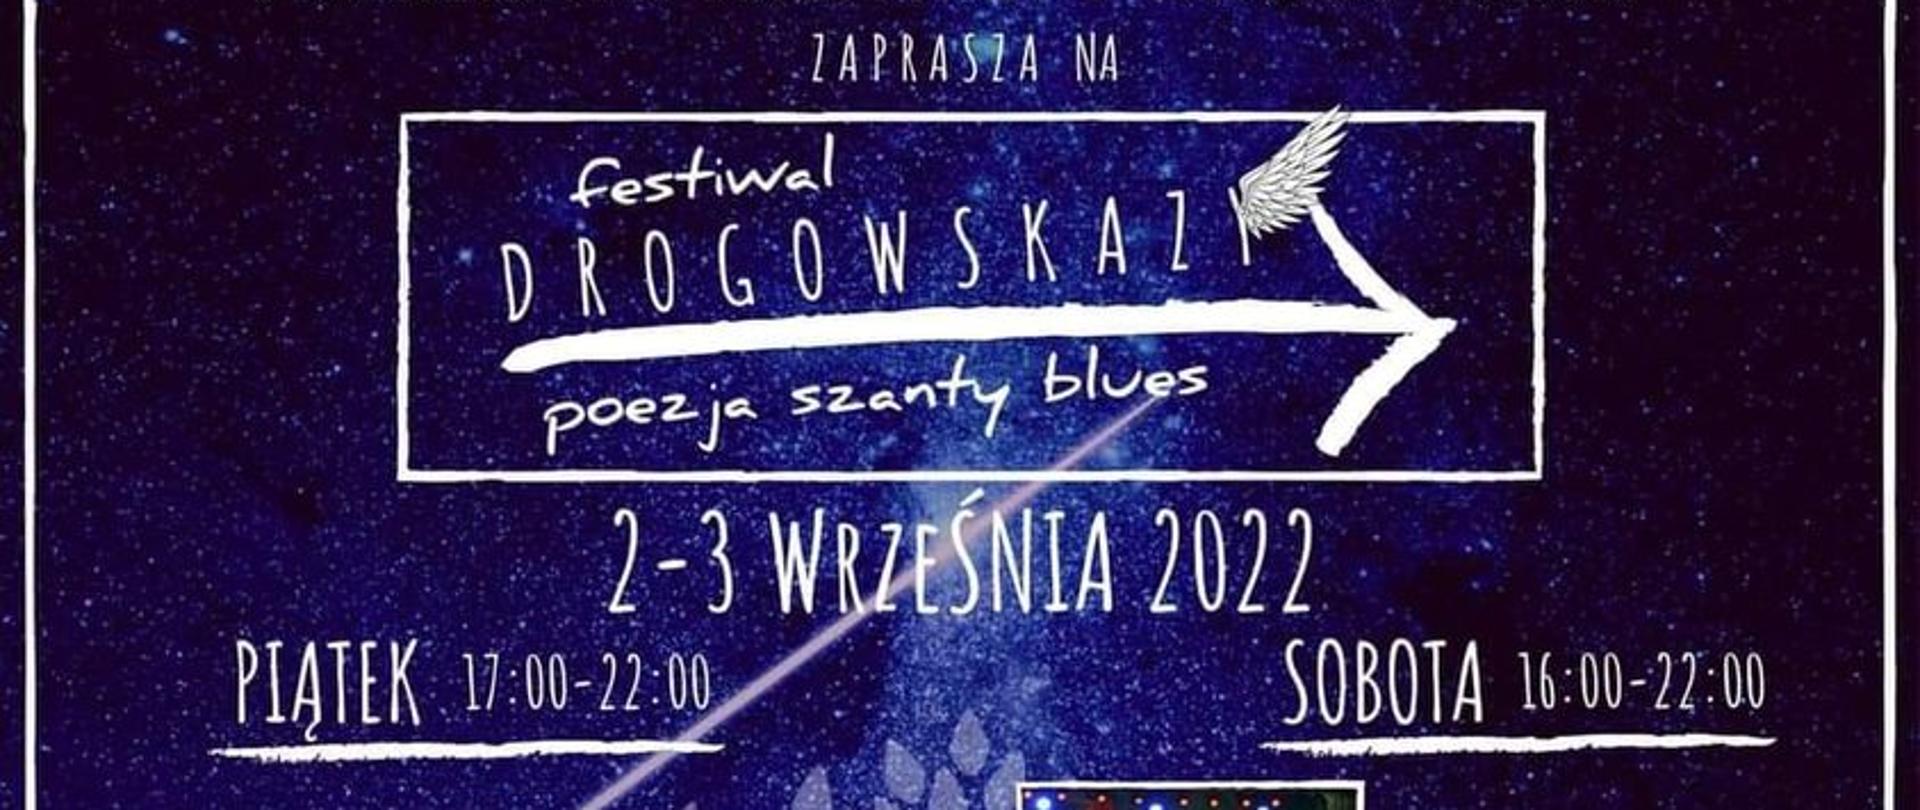 Festiwal "Drogowskazy" 2-3 września 2022